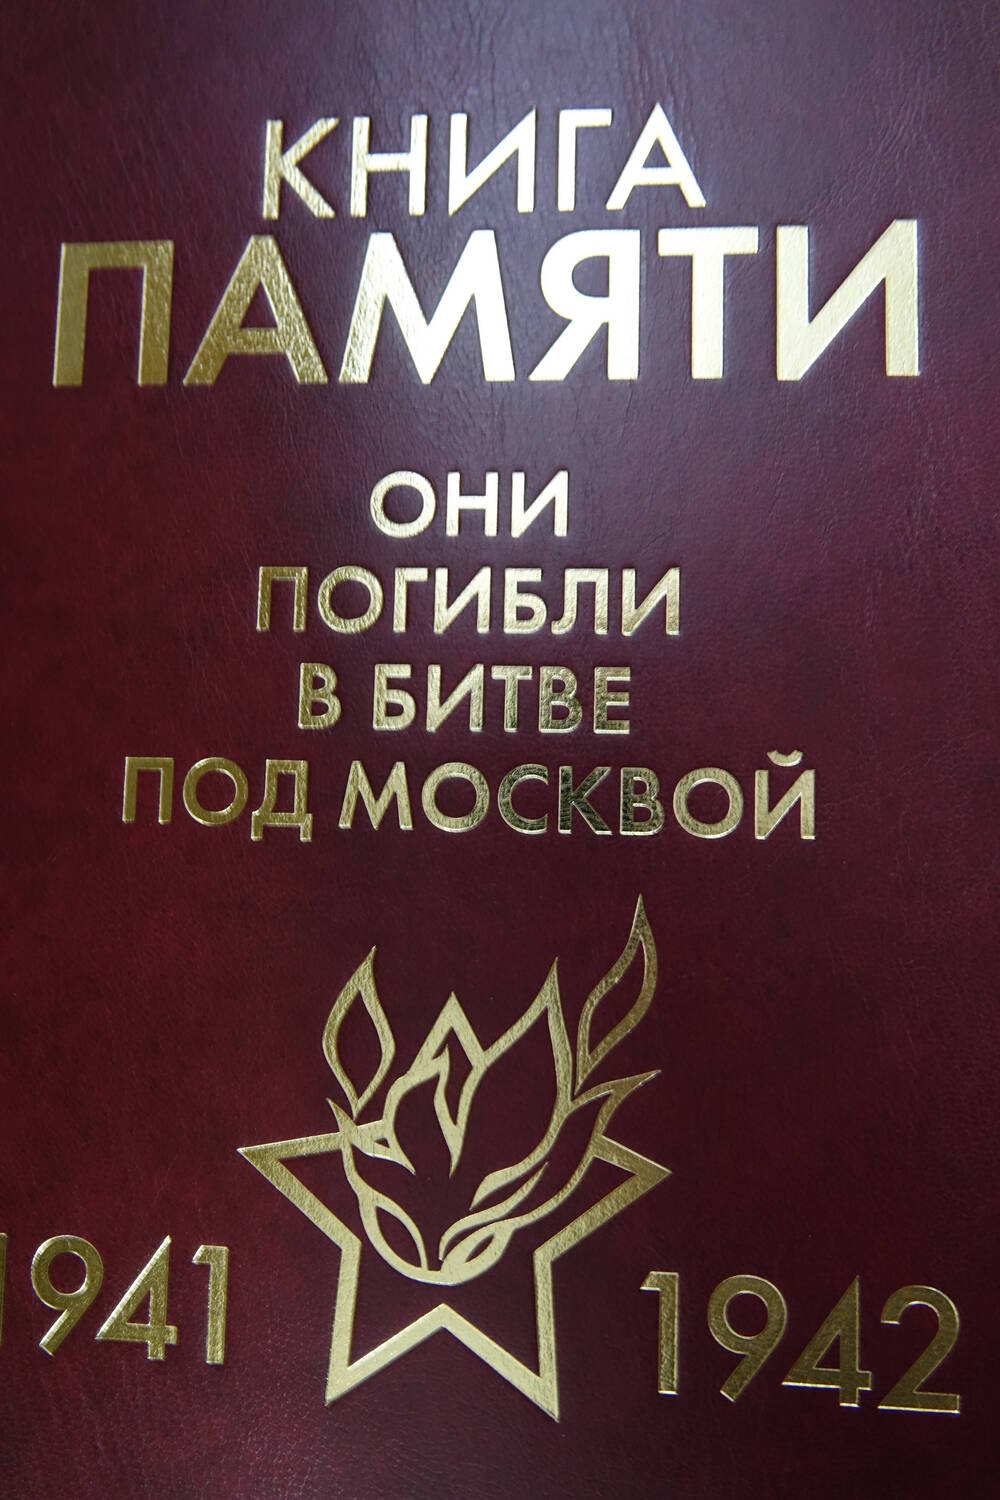 Книга Памяти «Они погибли в битве под Москвой  1941-1942гг.» Том 14  «C-Т»